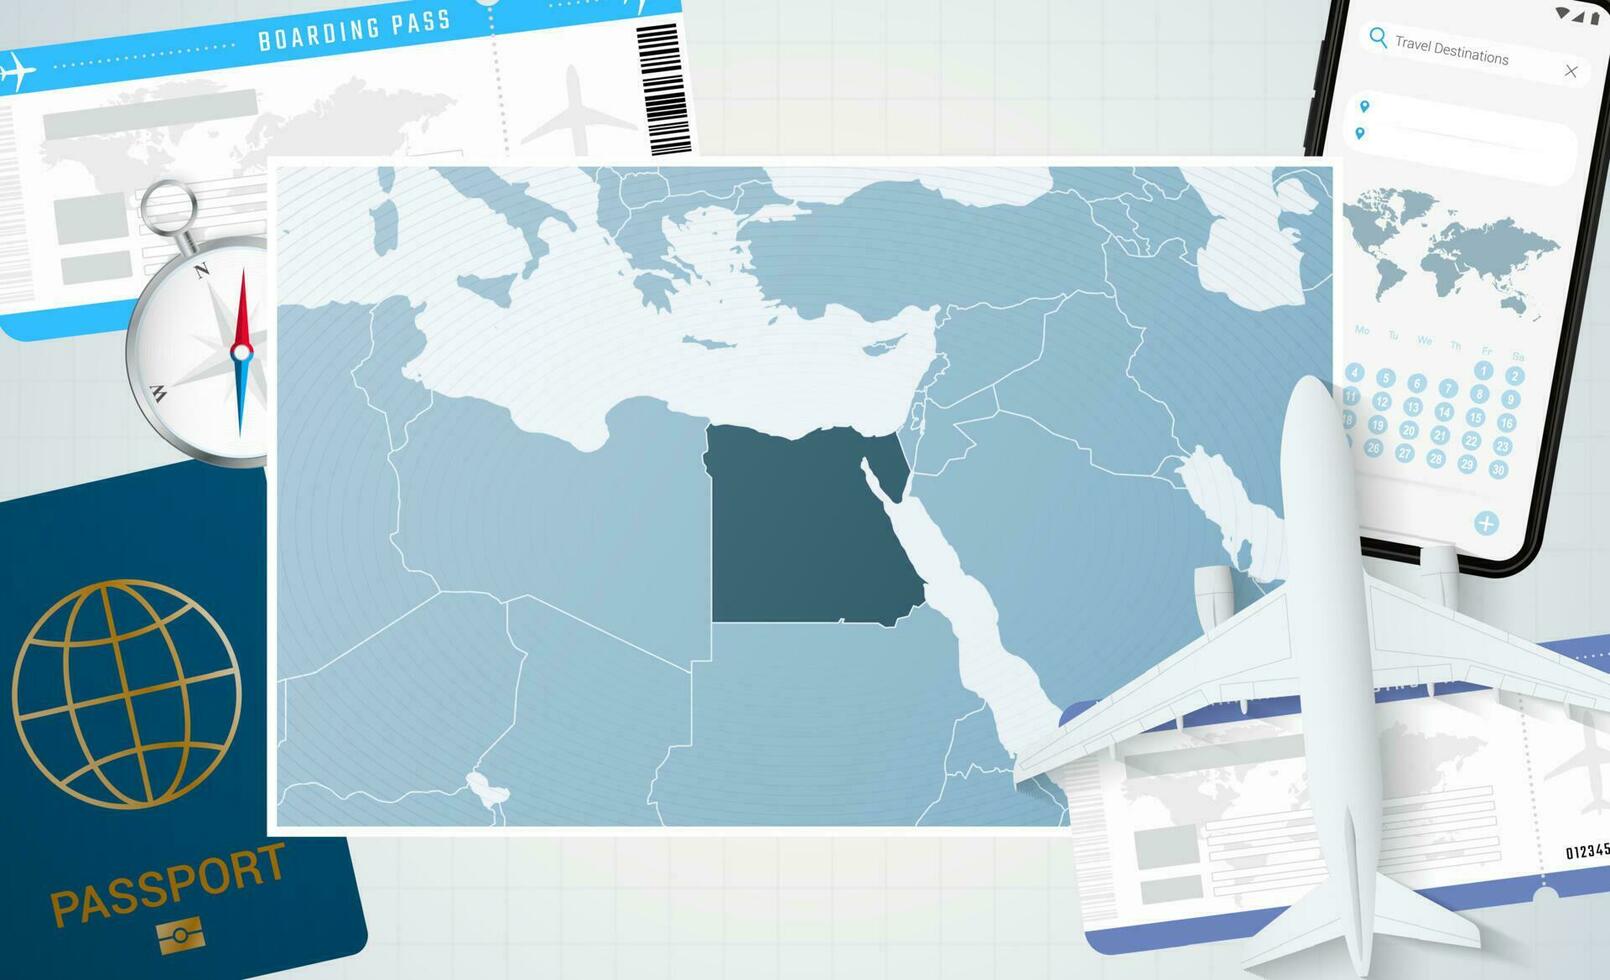 reis naar Egypte, illustratie met een kaart van Egypte. achtergrond met vliegtuig, cel telefoon, paspoort, kompas en kaartjes. vector